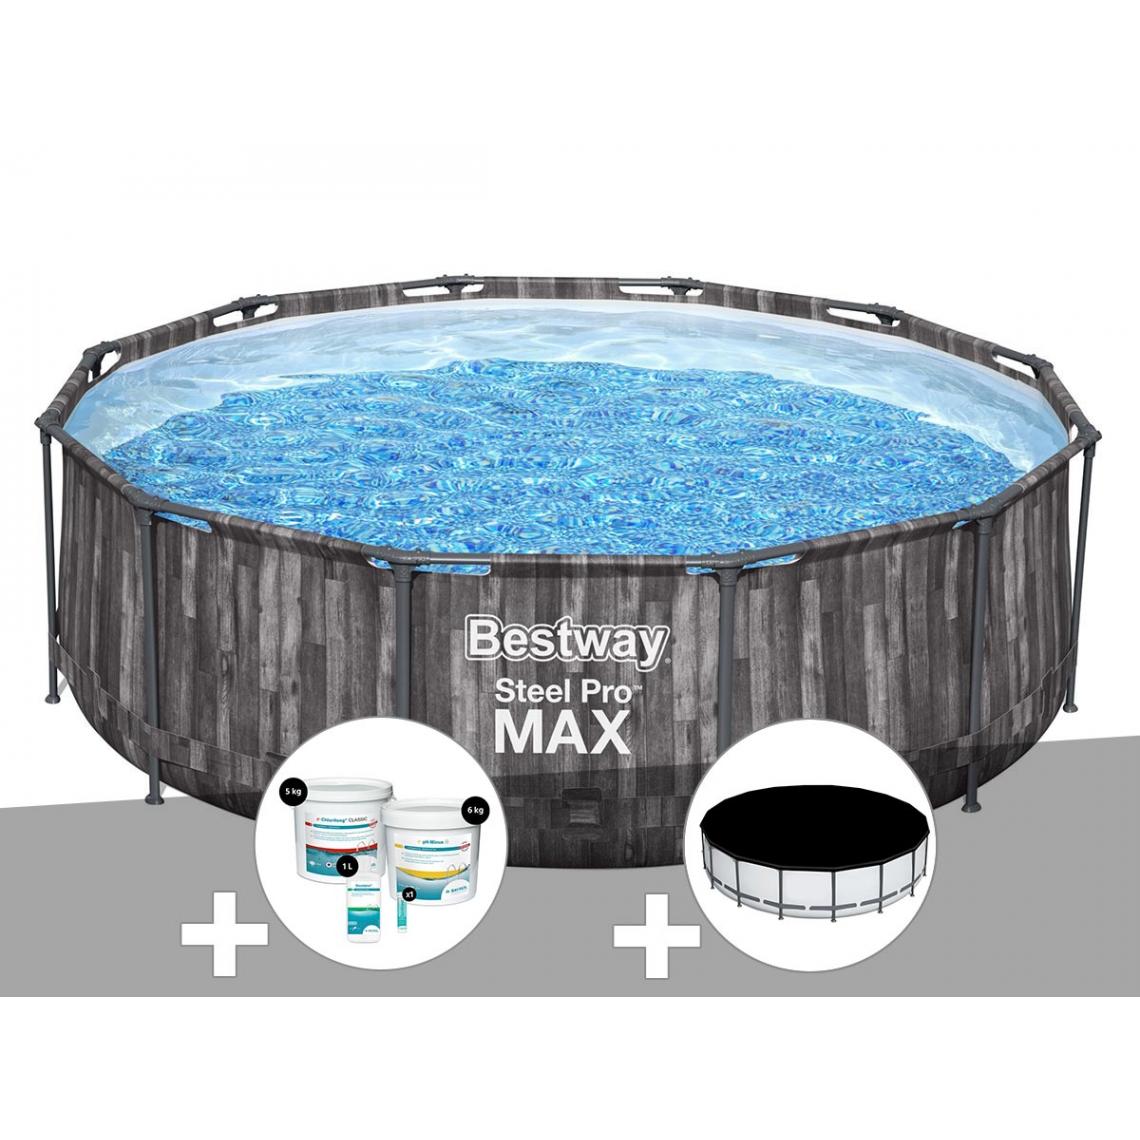 Bestway - Kit piscine tubulaire ronde Bestway Steel Pro Max décor bois 3,66 x 1,00 m + Kit de traitement au chlore + Bâche de protection - Piscine Tubulaire